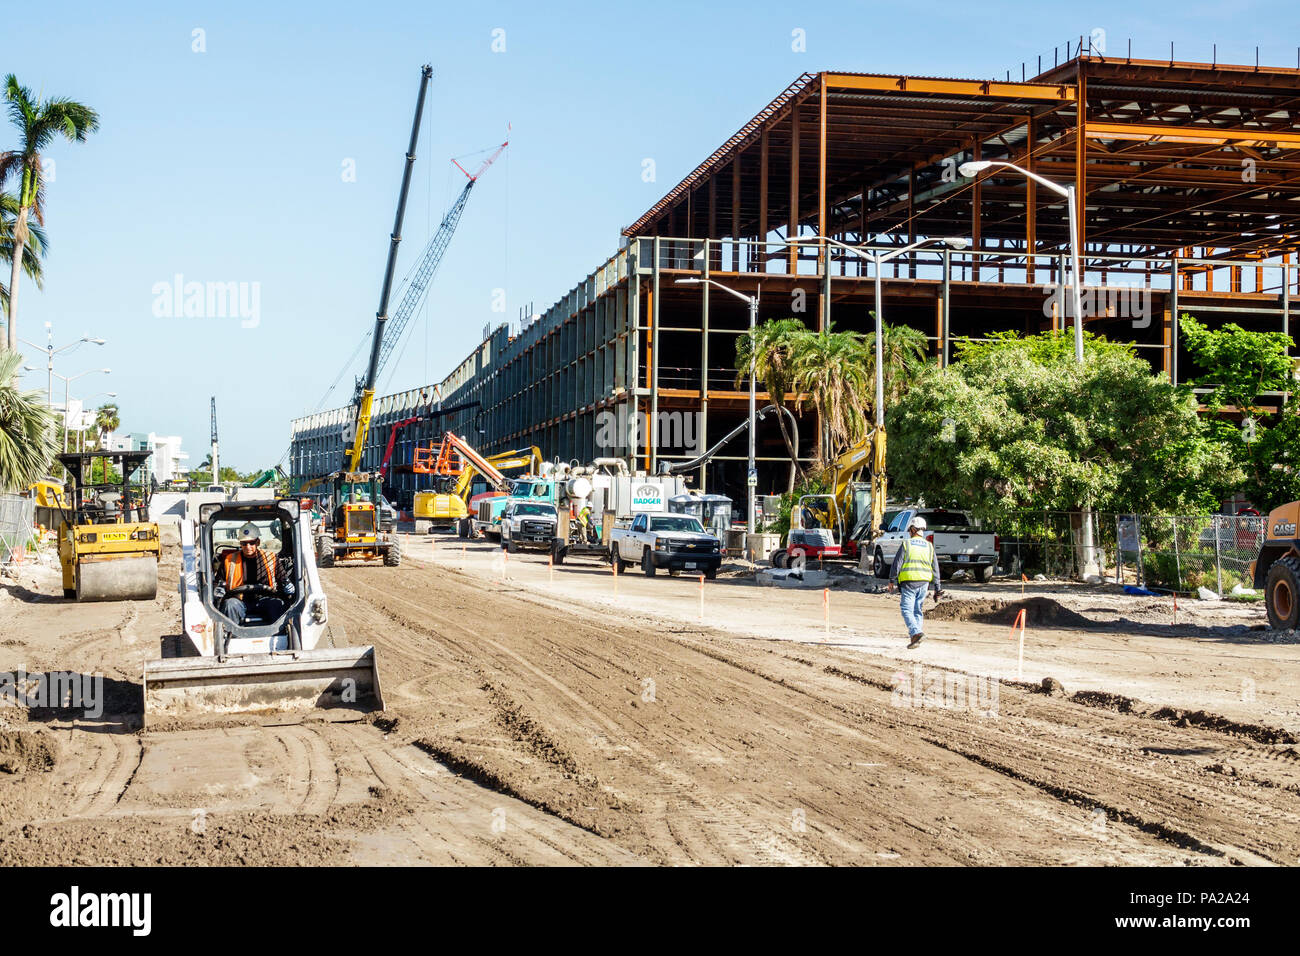 Miami Beach Florida, centre des congrès, sous construction d'un nouveau bâtiment de construction, agrandissement de rénovation, construction de structure métallique, équipement lourd Banque D'Images